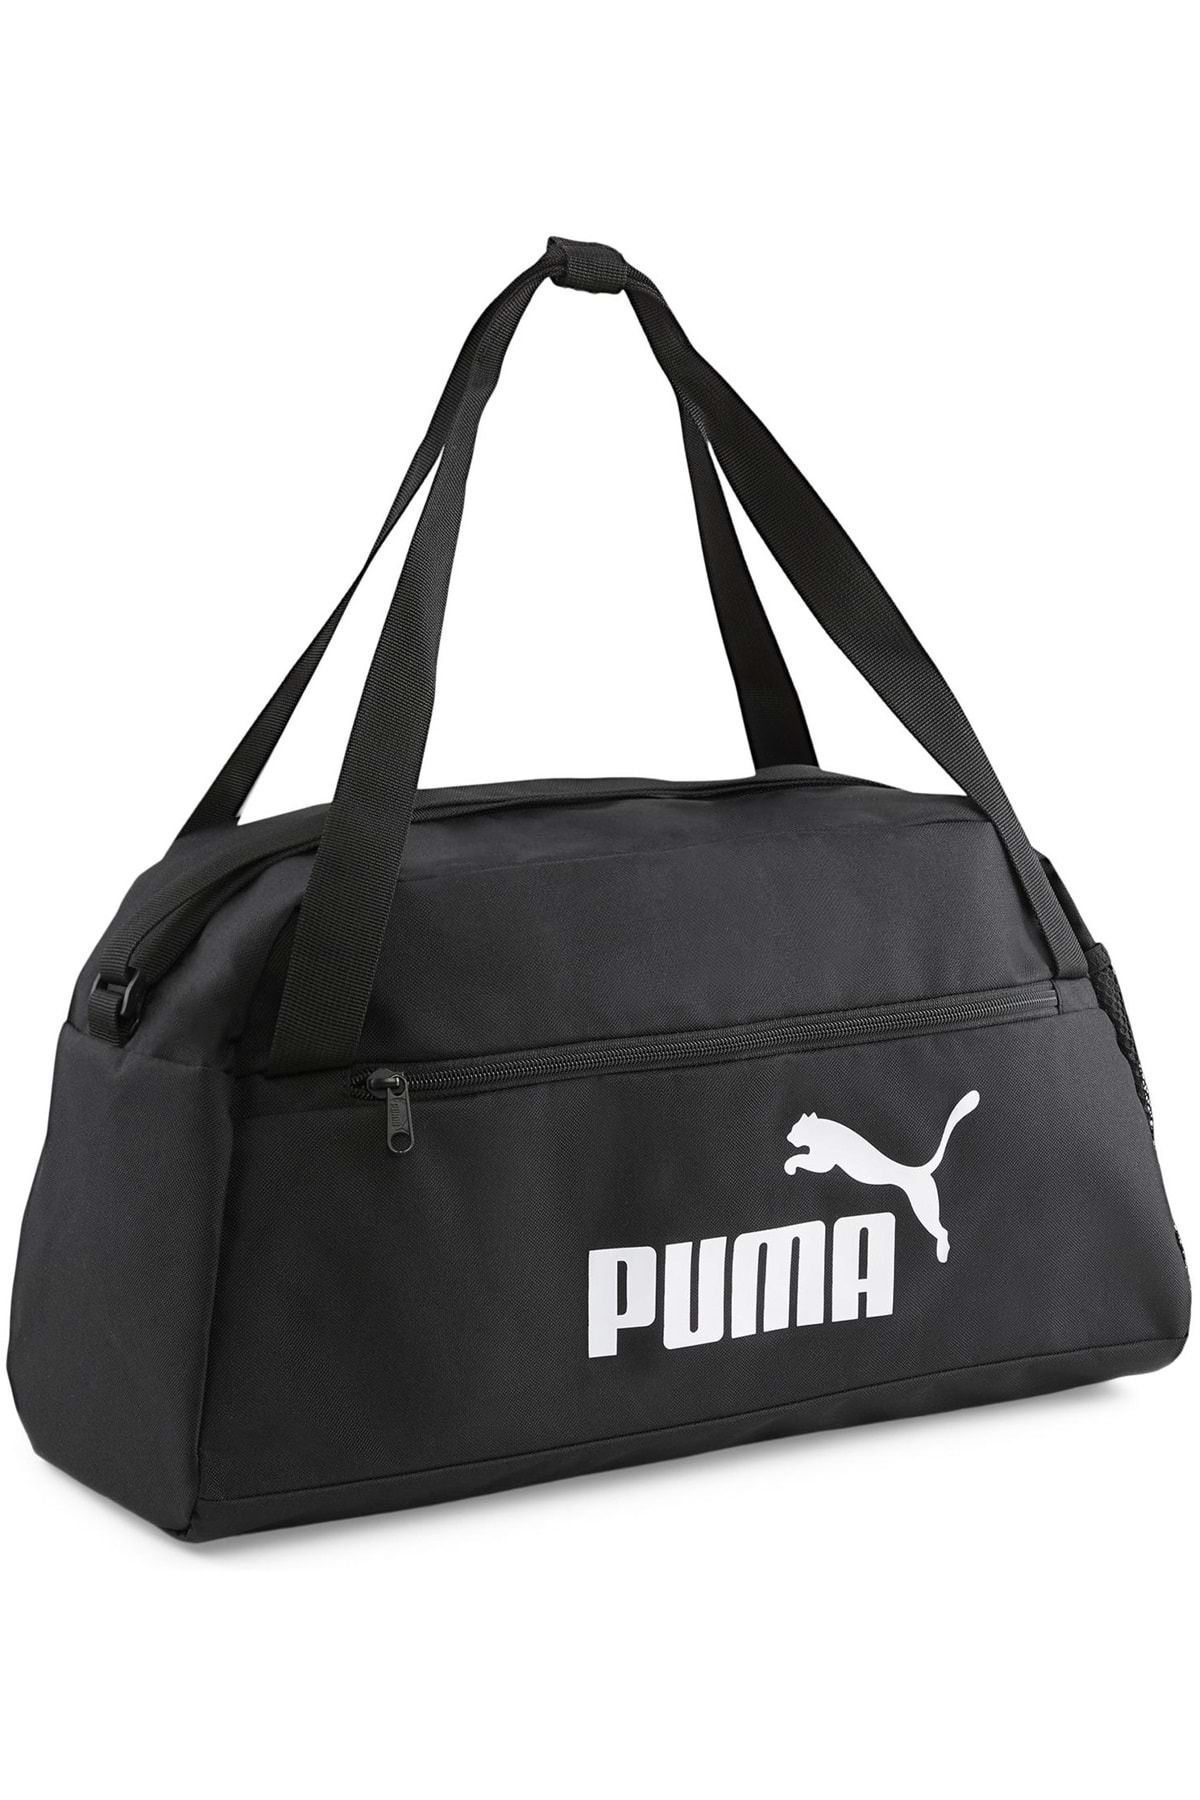 Puma 079949-01 Phase Sports Bag Unisex Spor Çanta Siyah